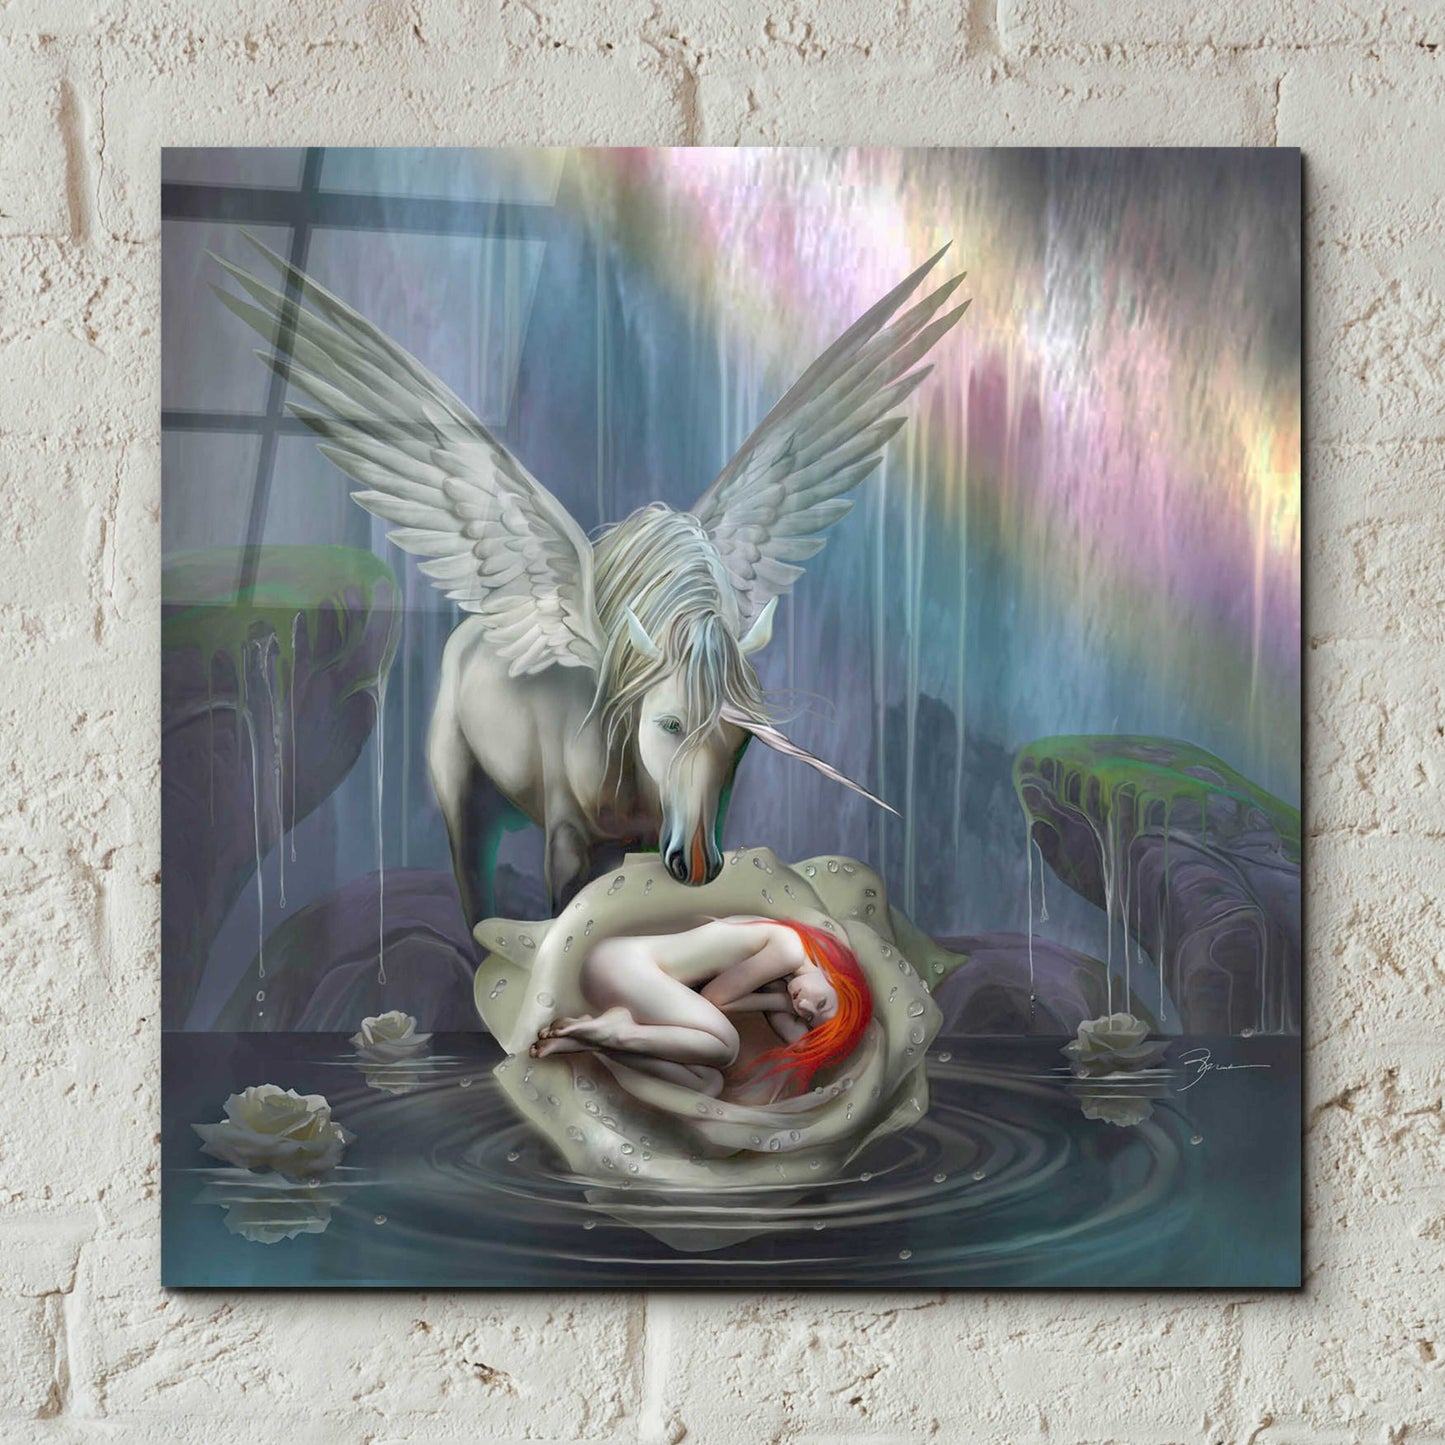 Epic Art 'Venus Rebirth' by Enright, Acrylic Glass Wall Art,12x12